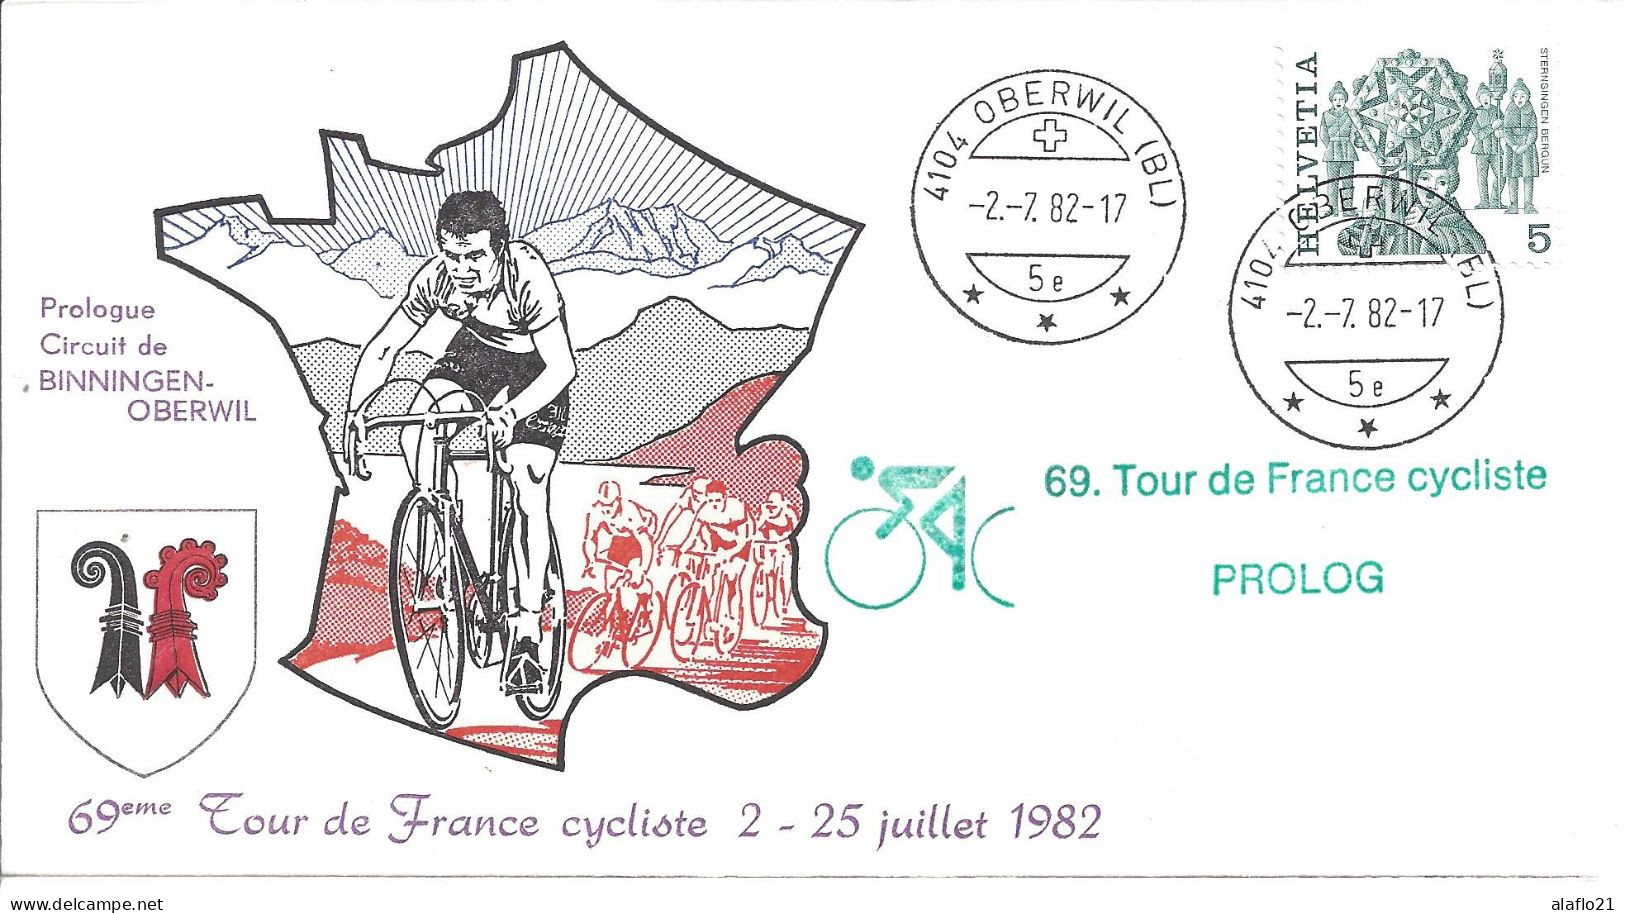 ENVELOPPE OFFICIELLE TOUR De FRANCE CYCLISTE 1982 - PROLOGUE - BINNINGEN-OBERWIL - Cachets Commémoratifs